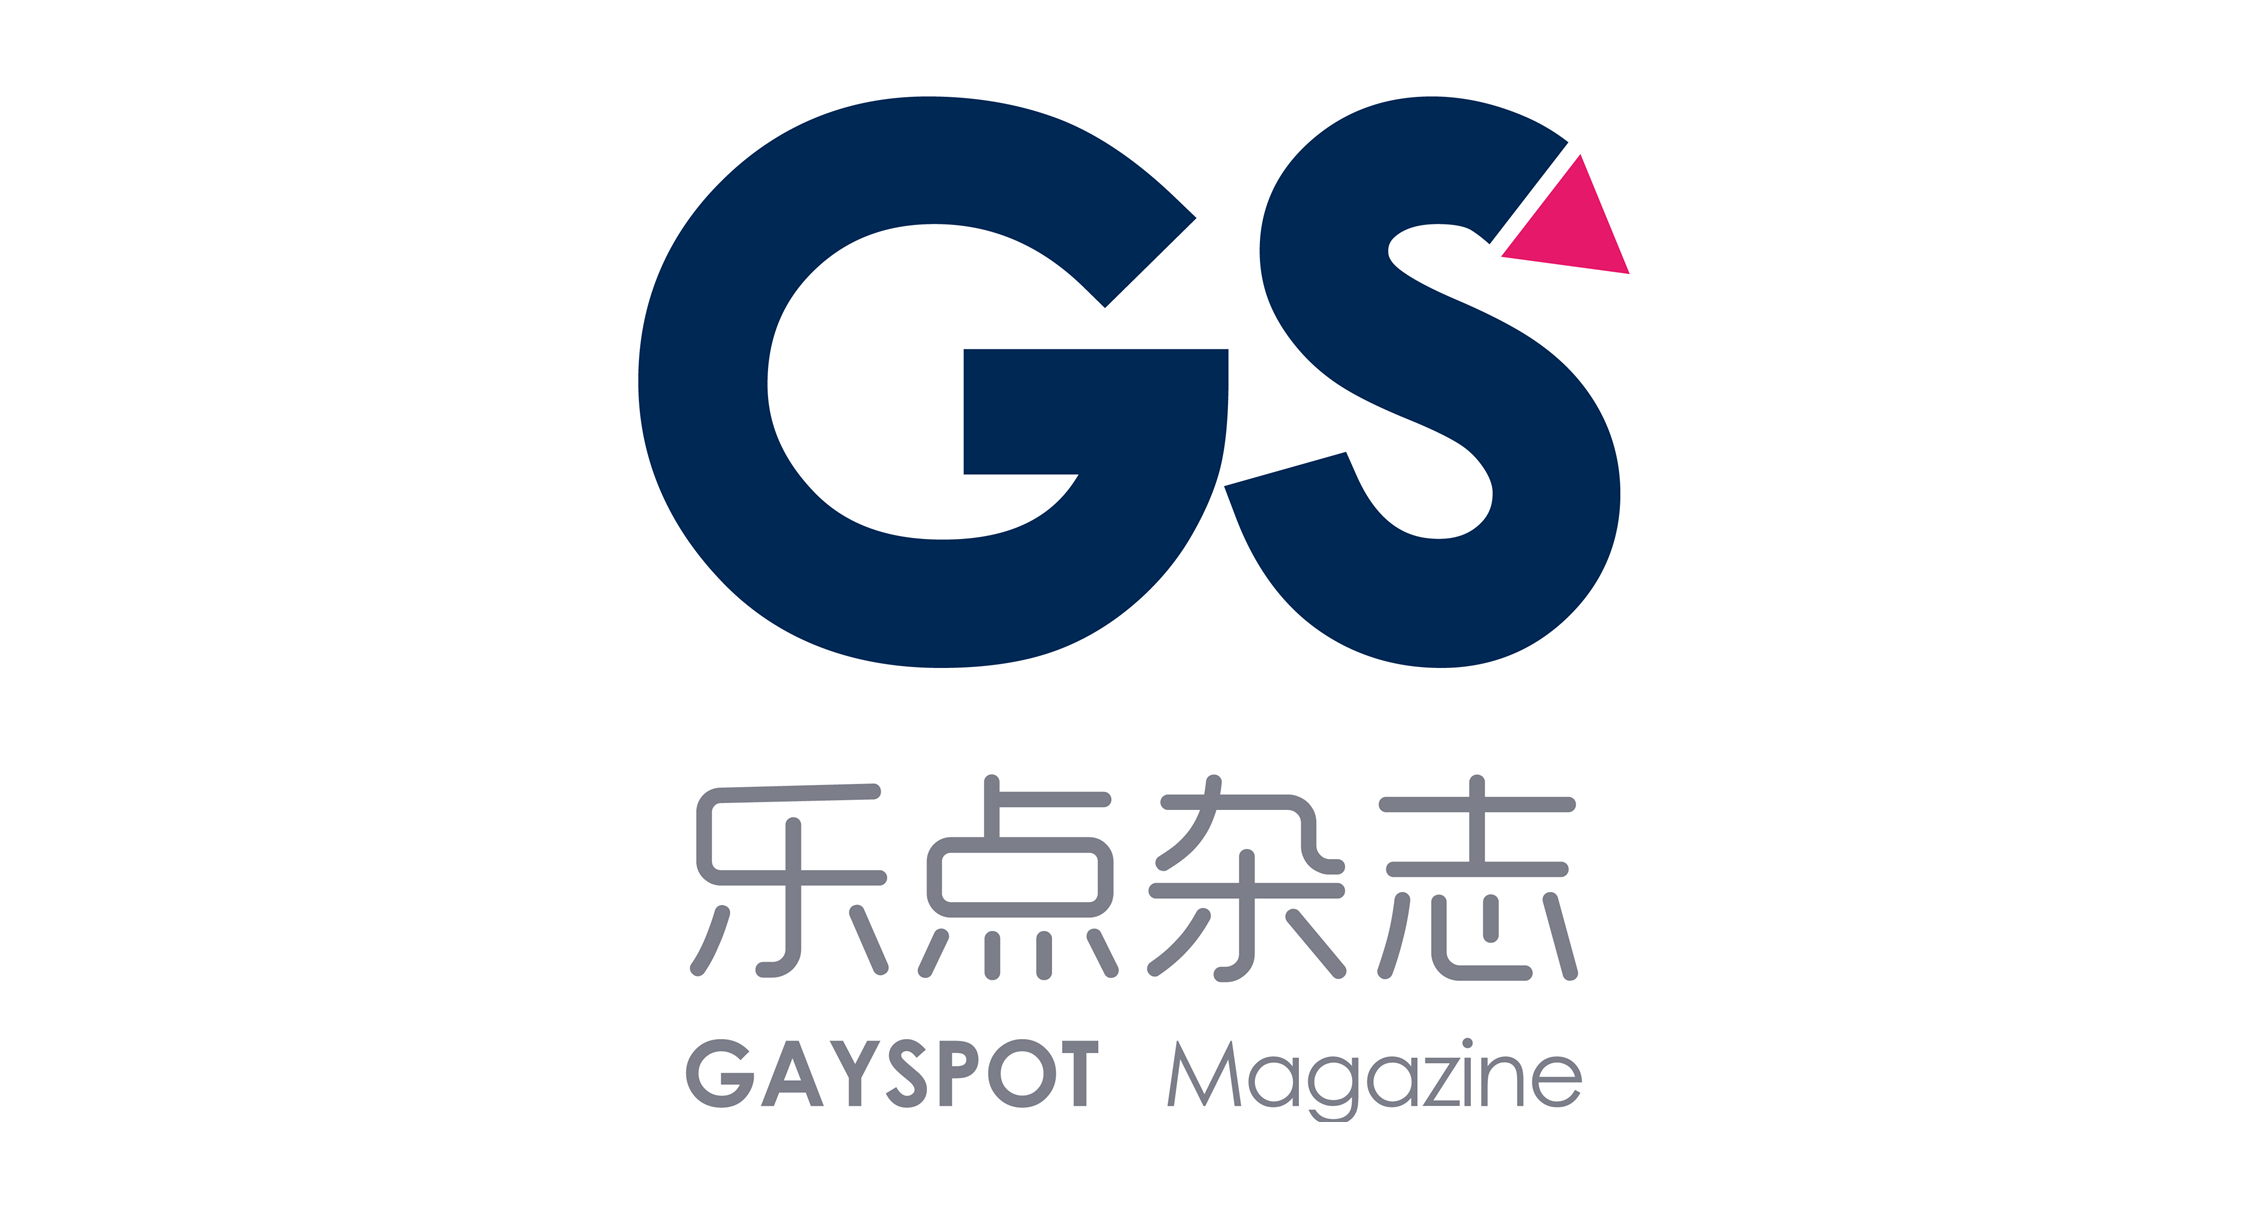 乐点杂志 Gayspot